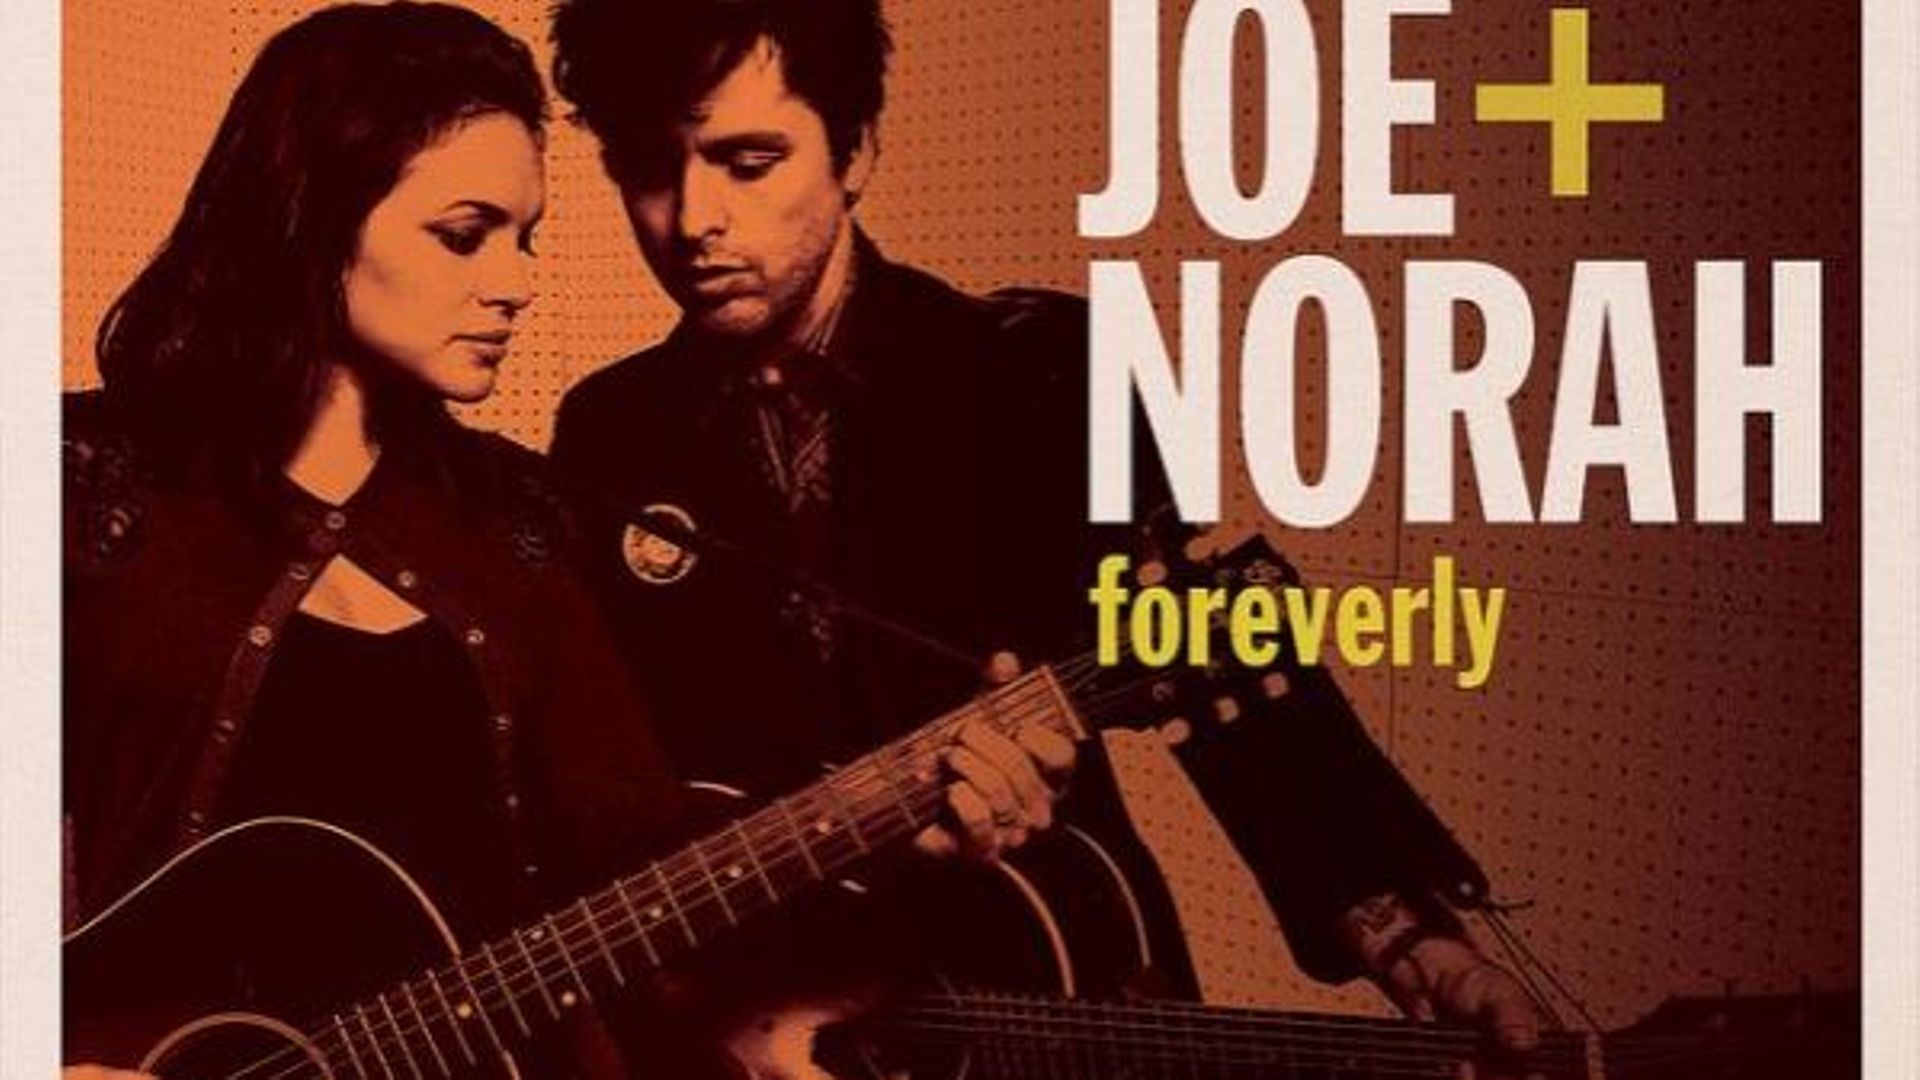 Norah Jones et Billie Joe Armstrong de Green Day dans un album de reprises